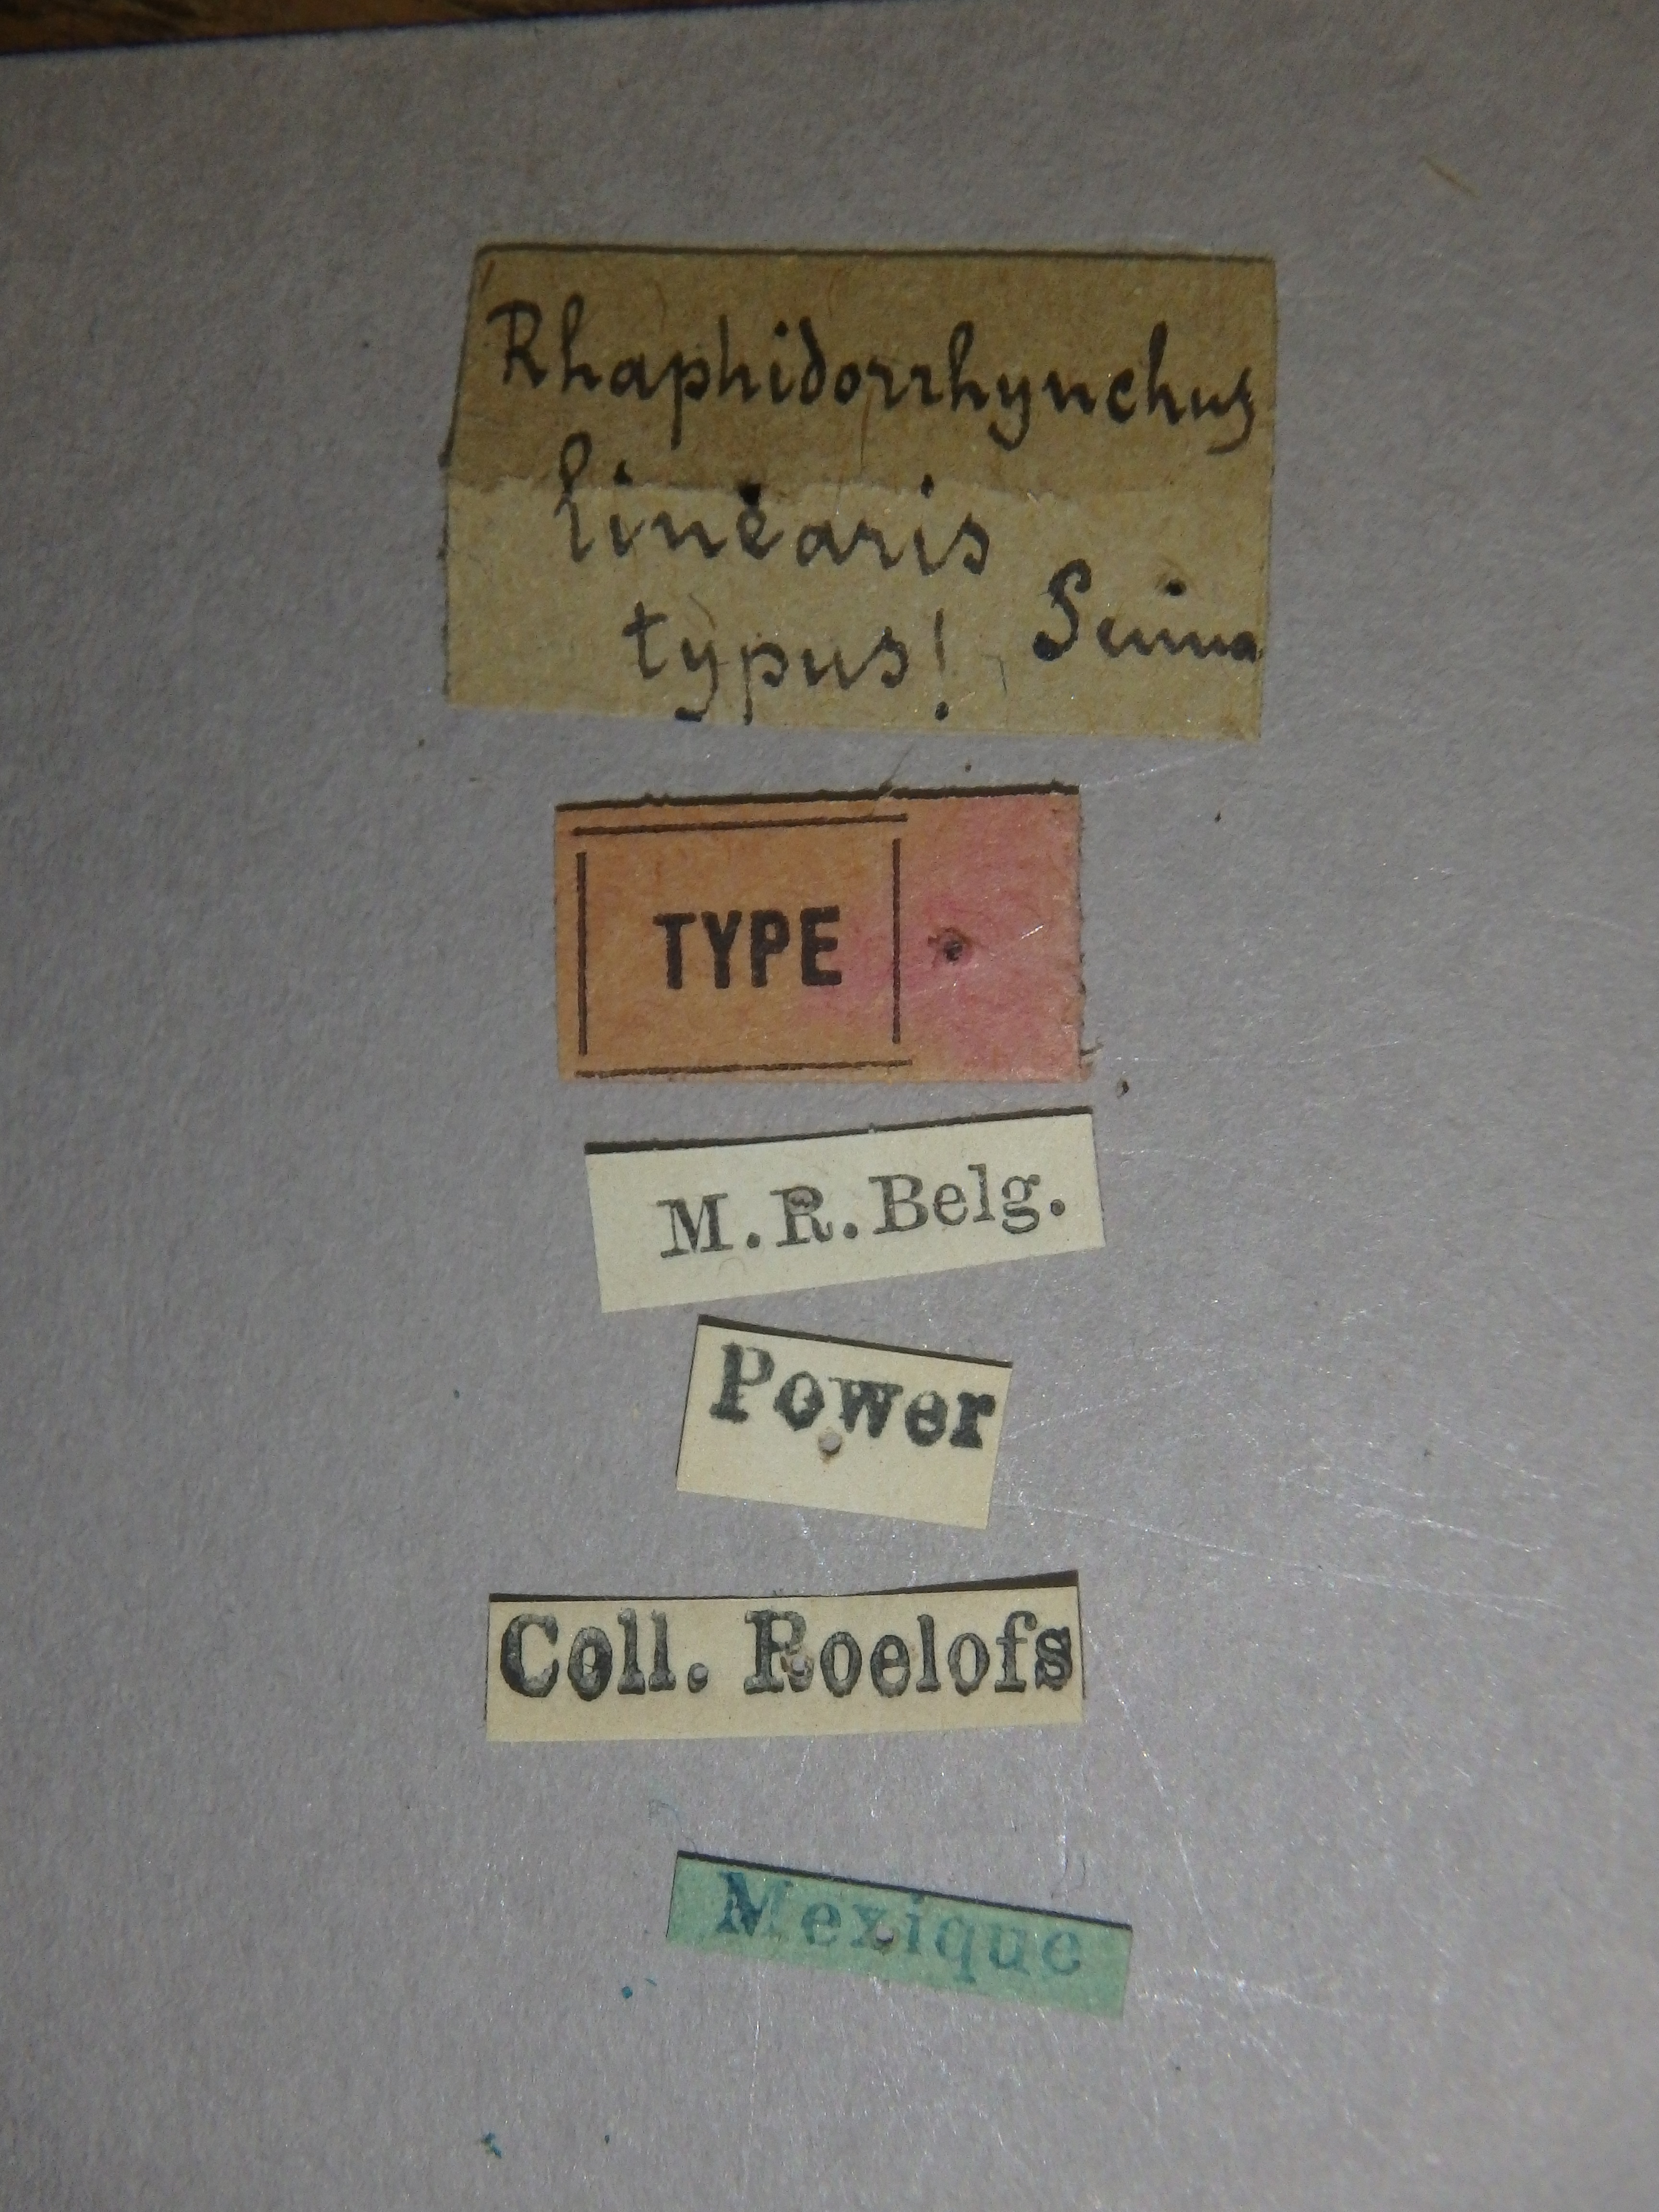 Raphidorhynchus linearis t Labels.jpg